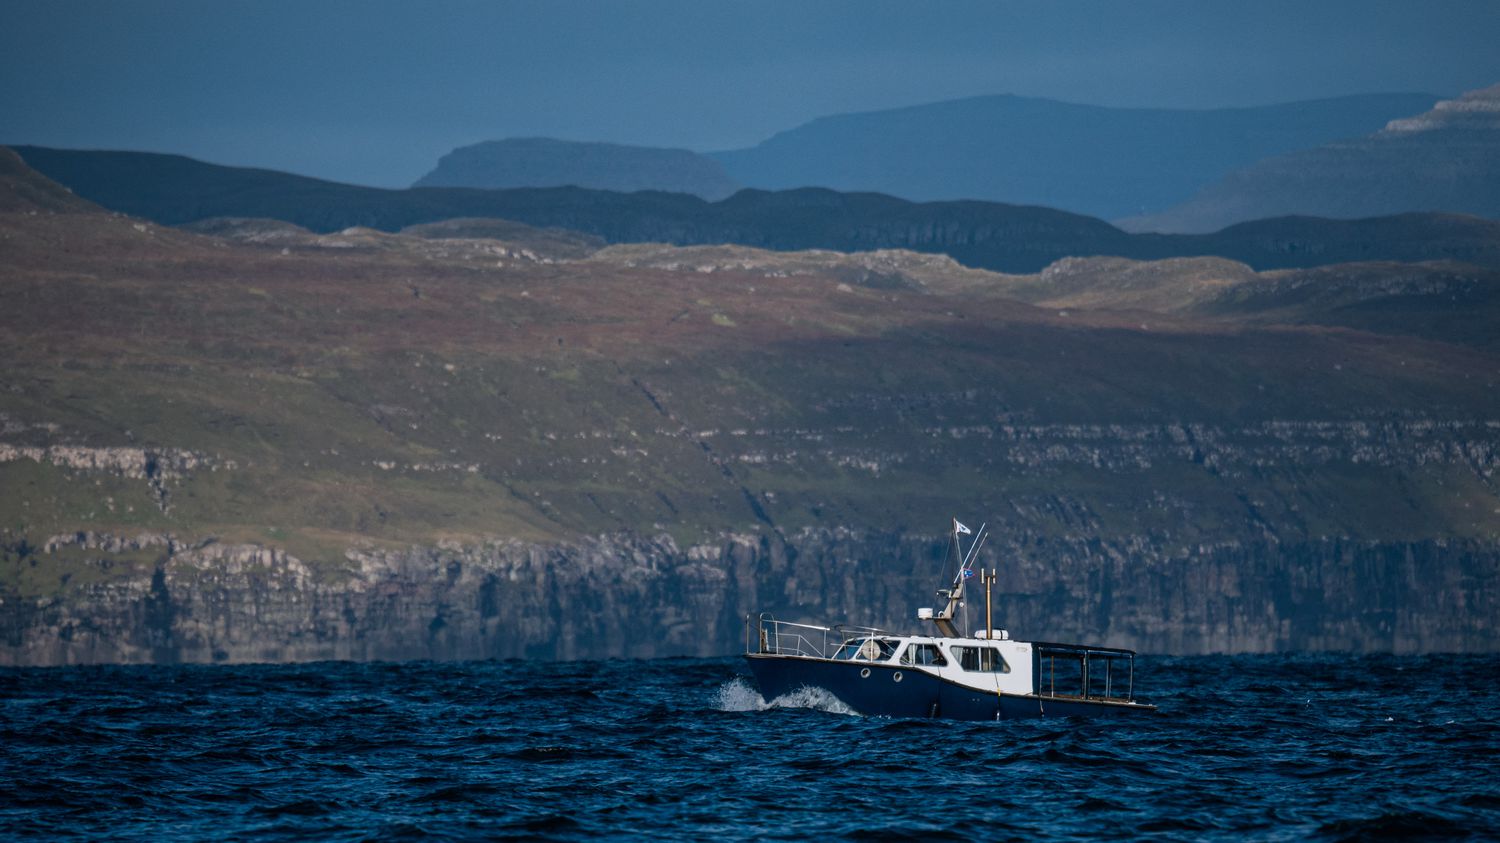 Faroe Islands extend fishing deal with Russia despite war in Ukraine
